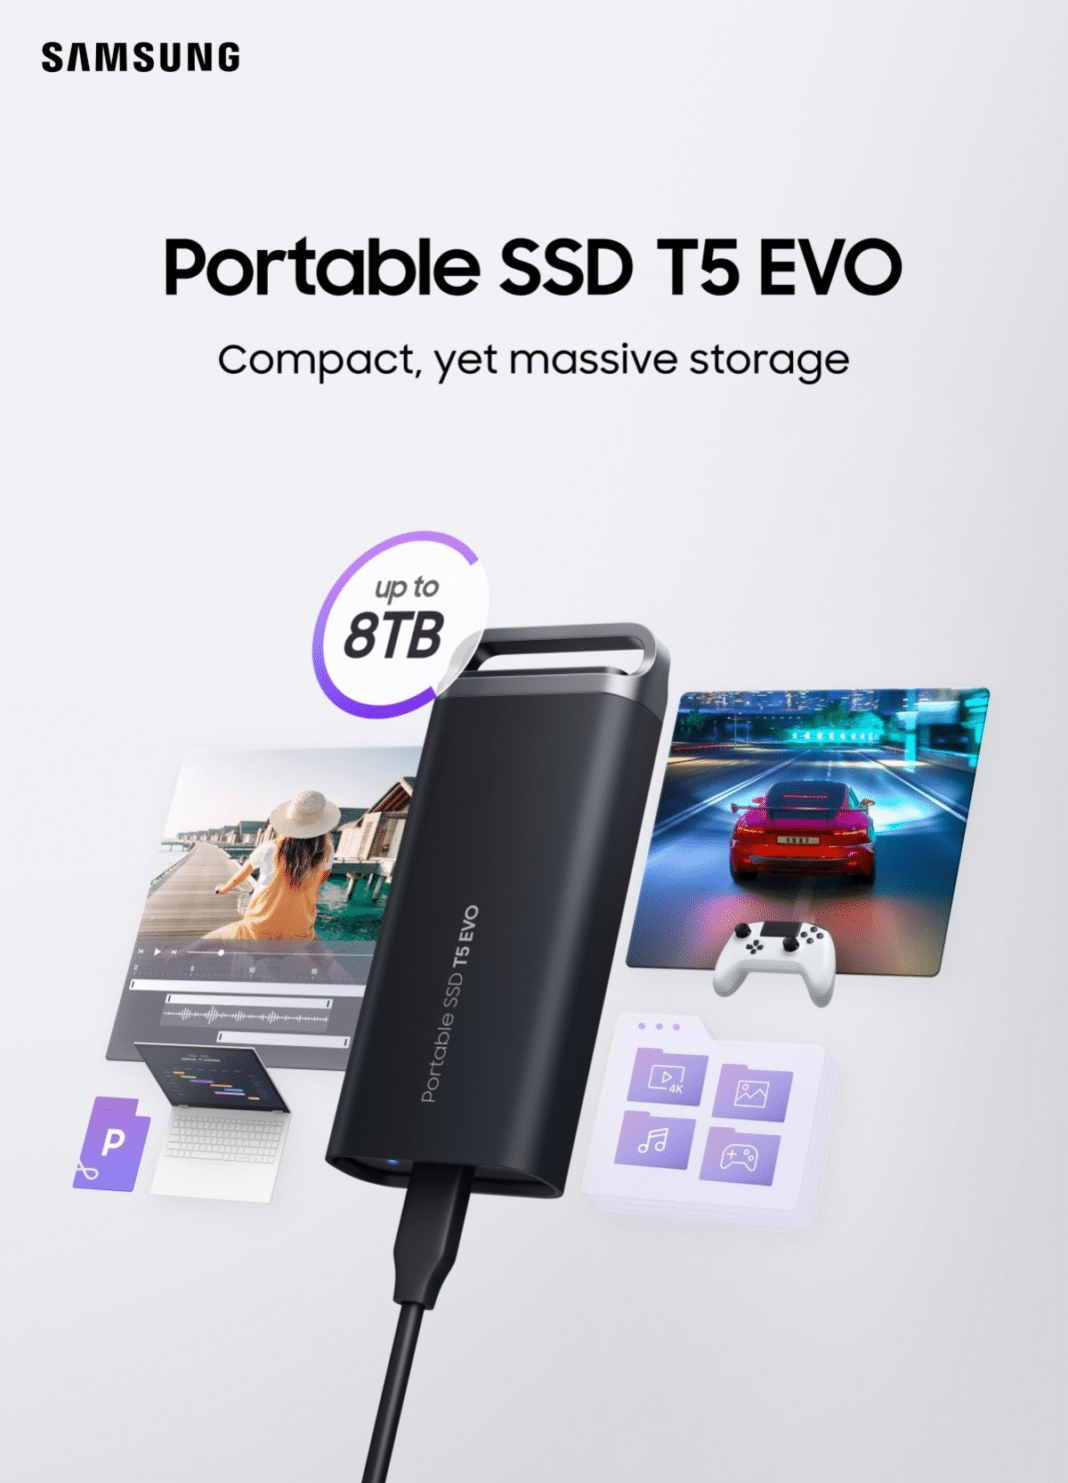 ¡Descubre el nuevo SSD T5 EVO de Samsung con capacidad de hasta 8TB!